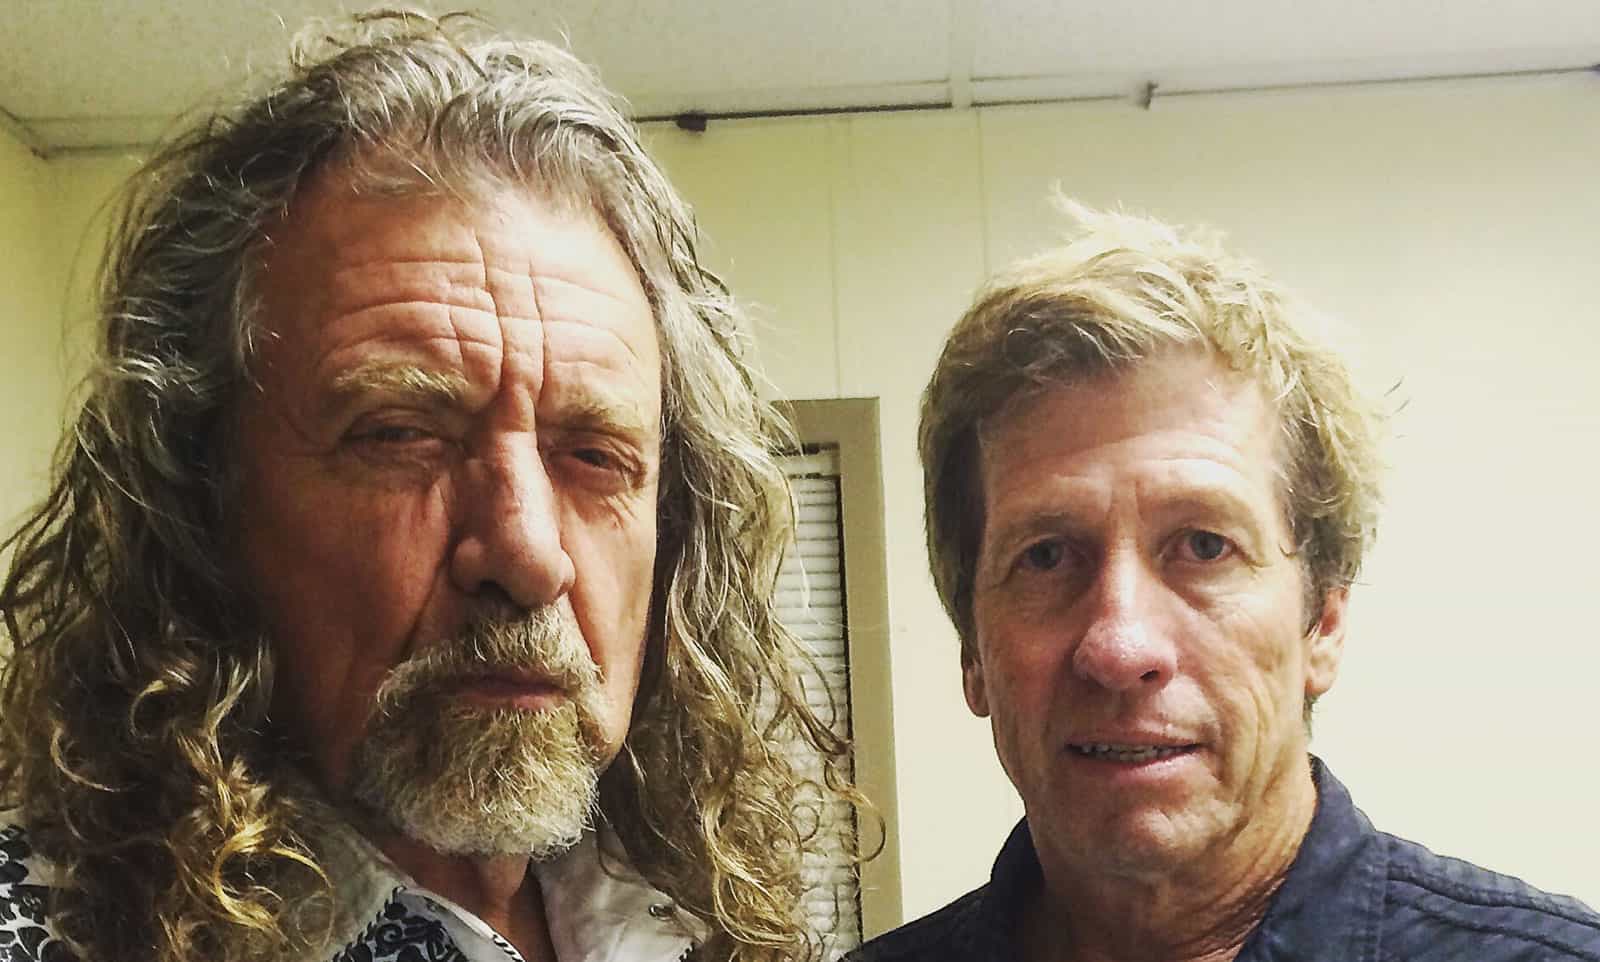 Dusty alongside Robert Plant, lead singer from Led Zeppelin